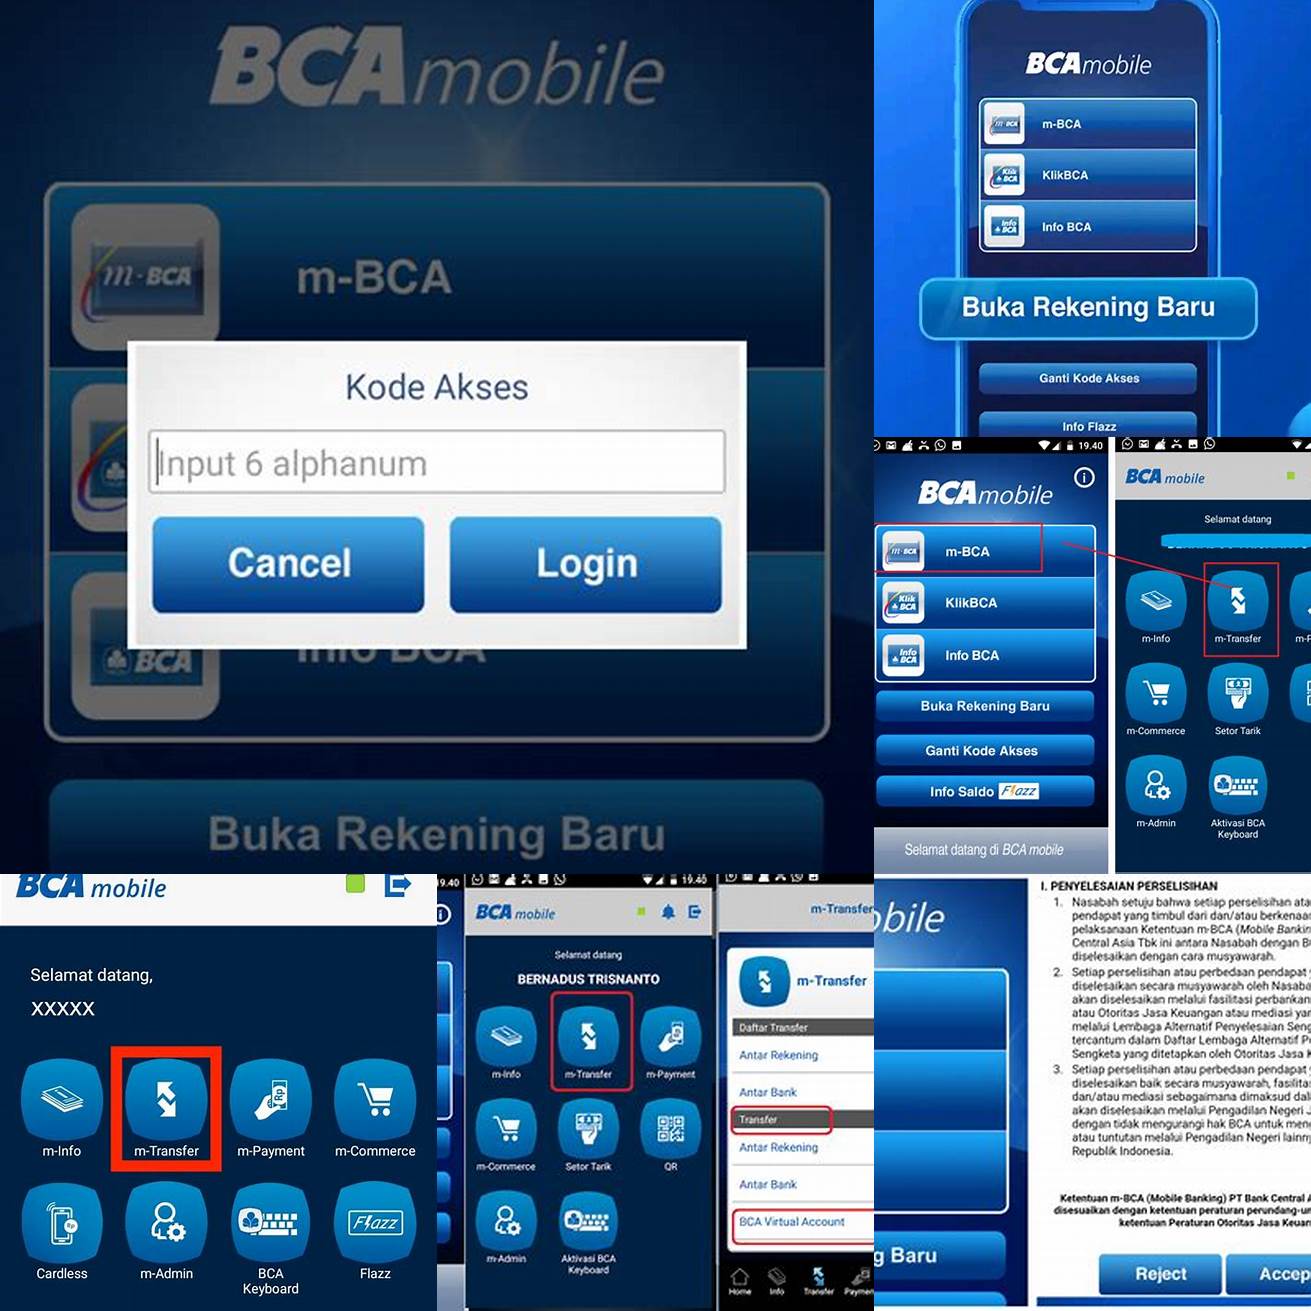 2 Login ke akun BCA mobile Anda